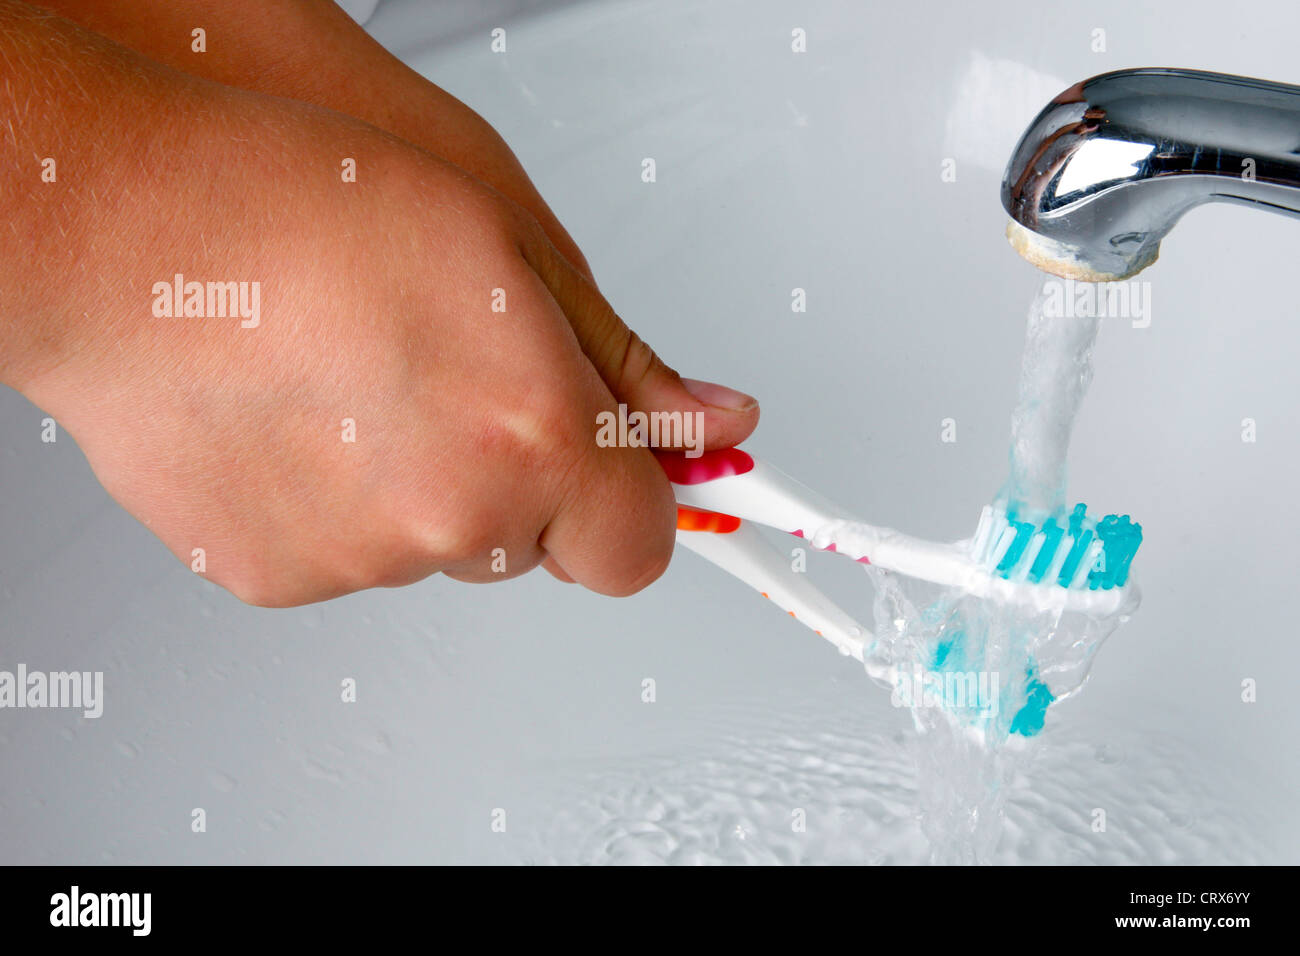 rinse toothbrush